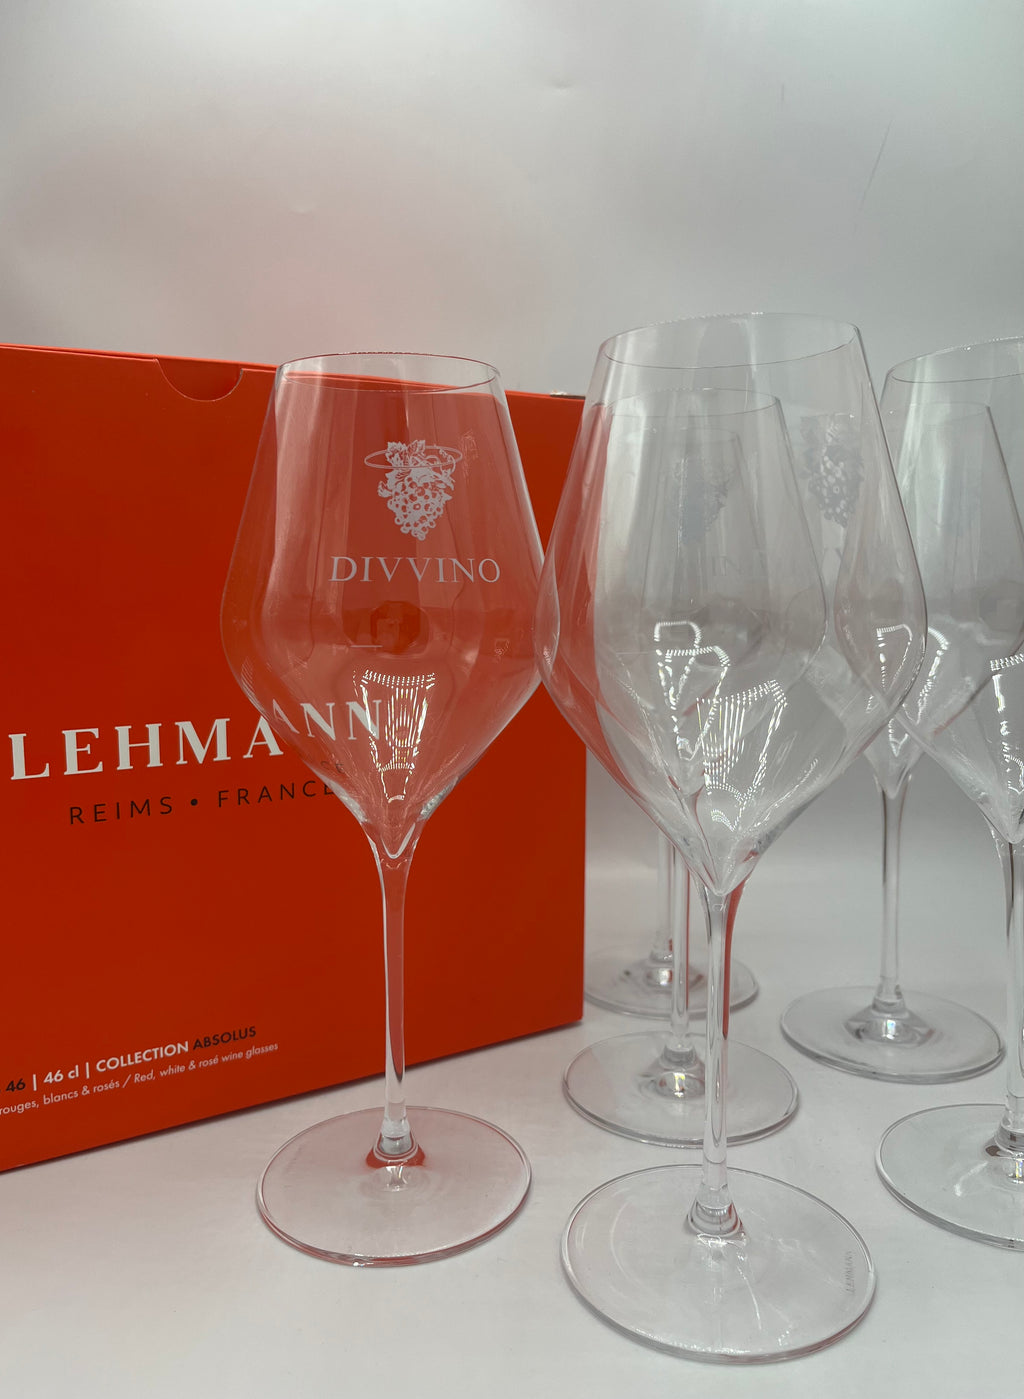 Set of 6 Divvino Paris wine glasses - Lehmann